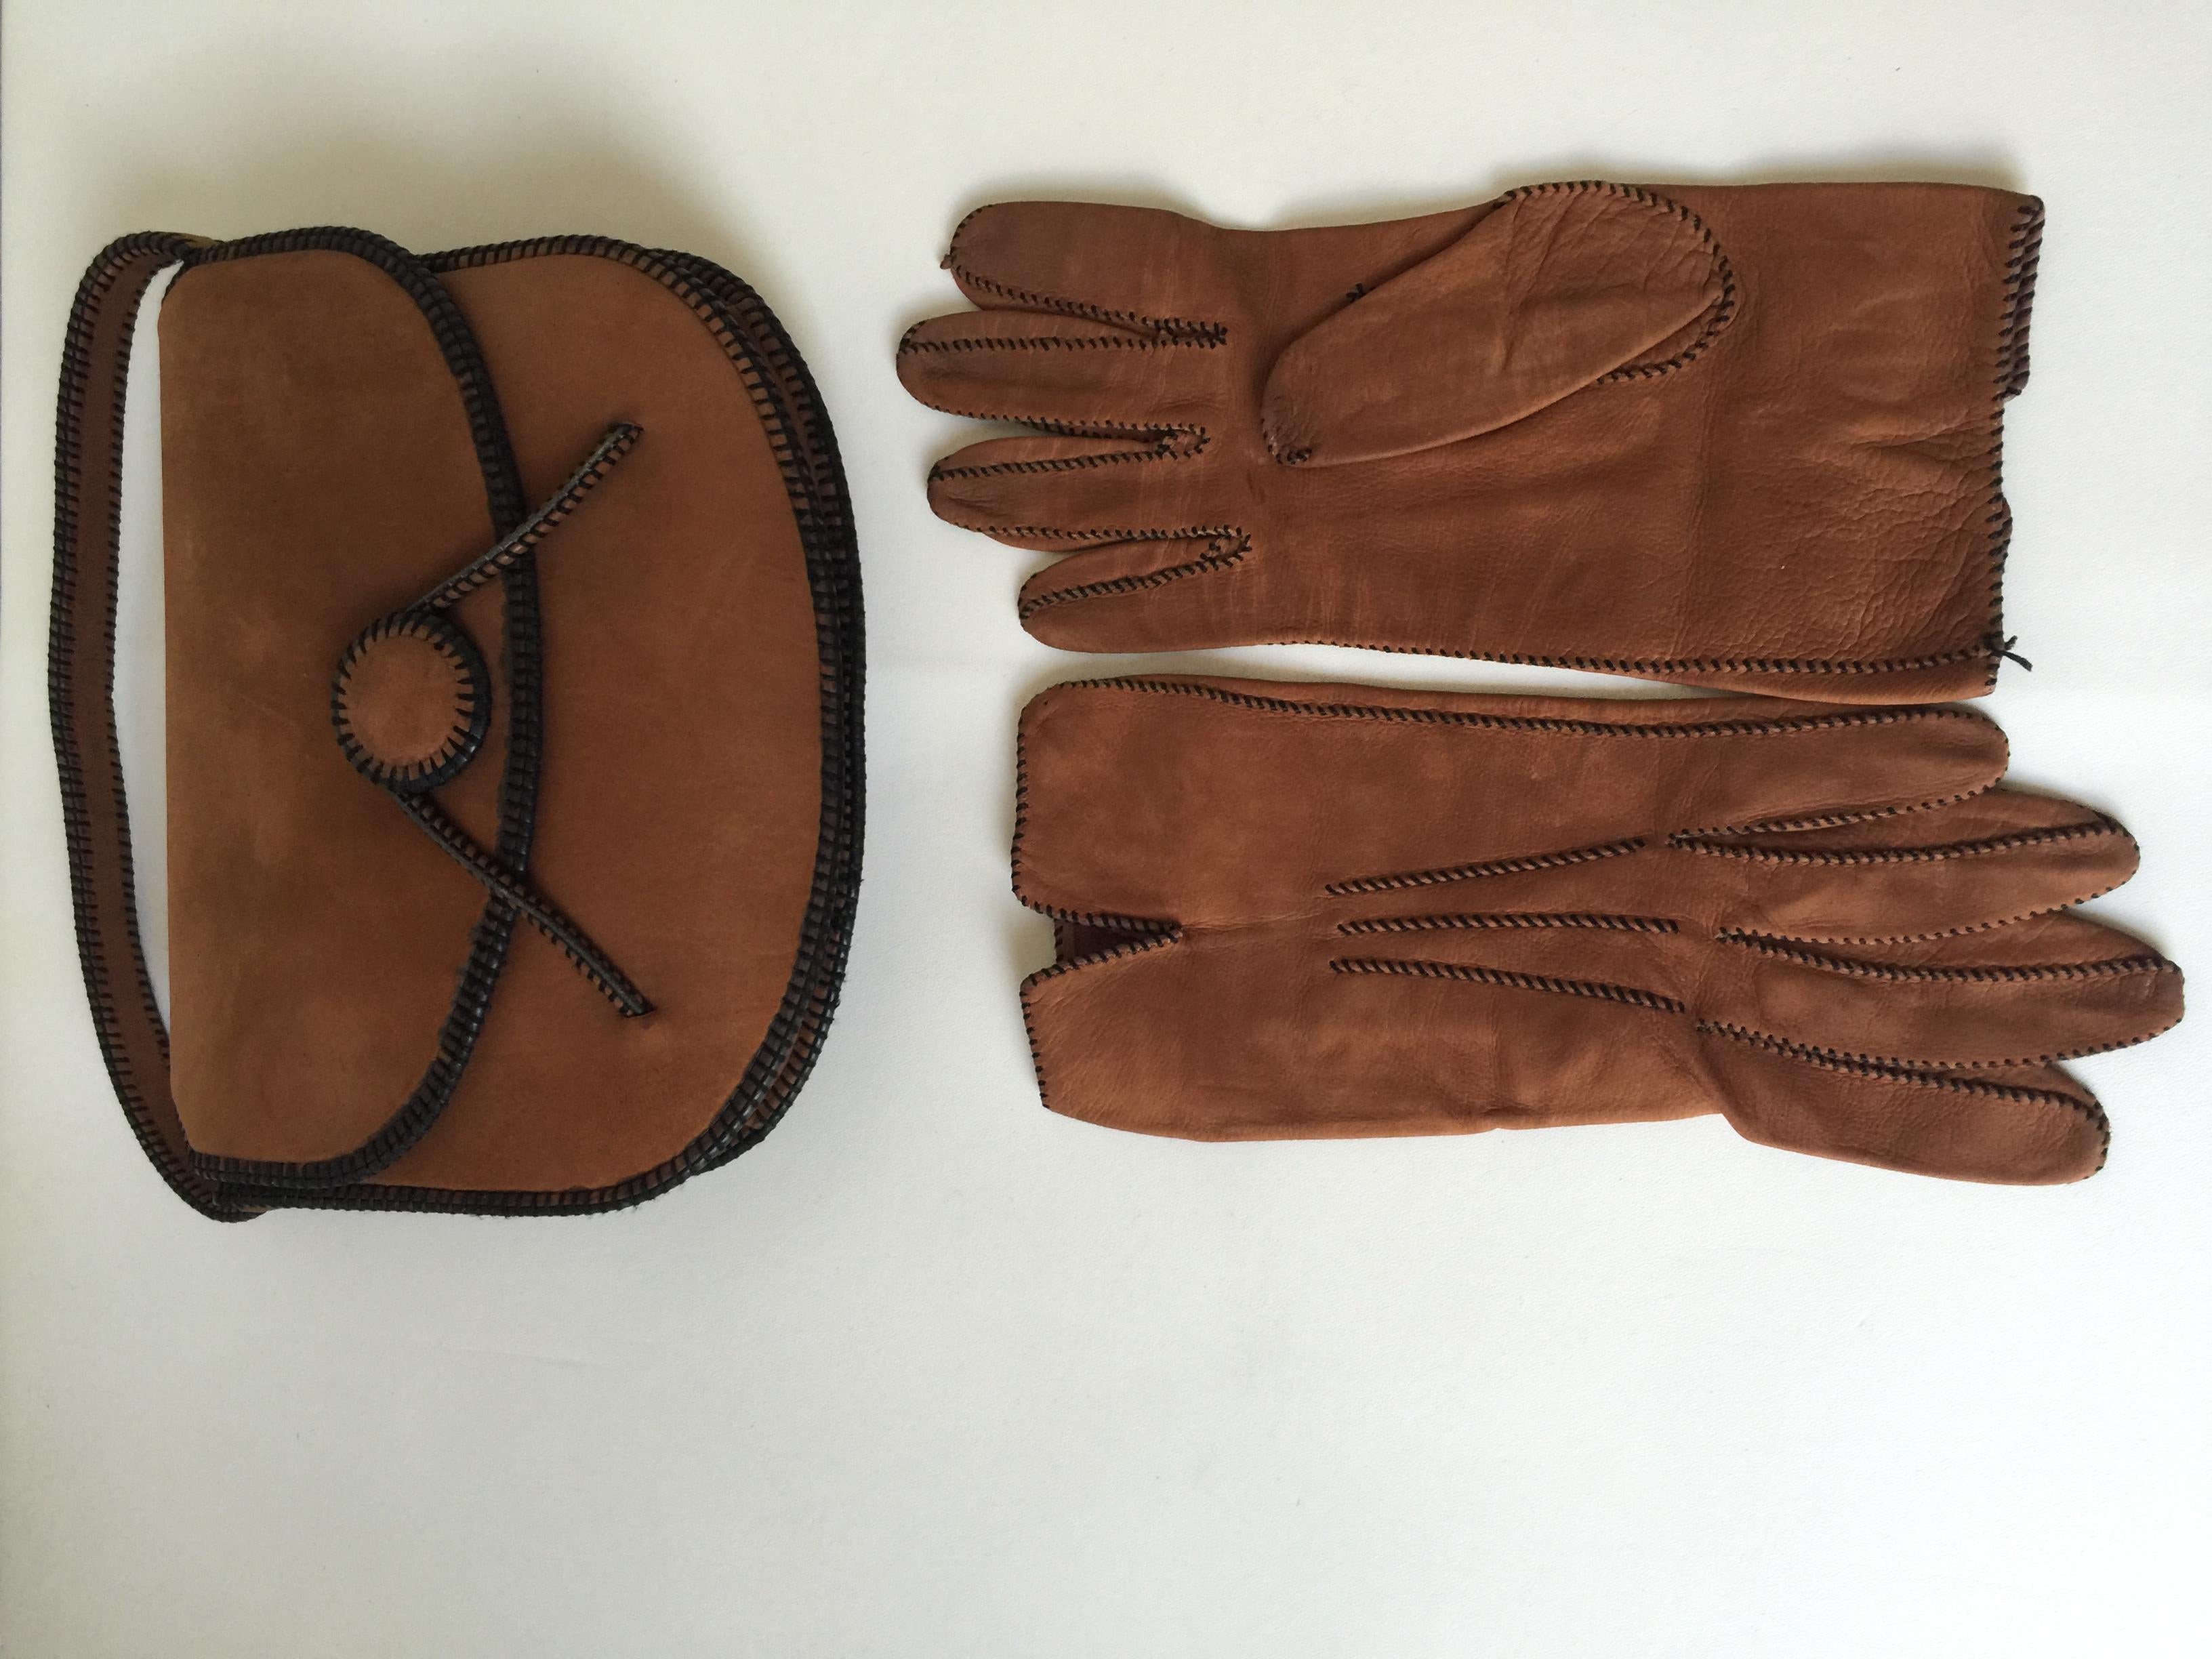 vintage hermes gloves